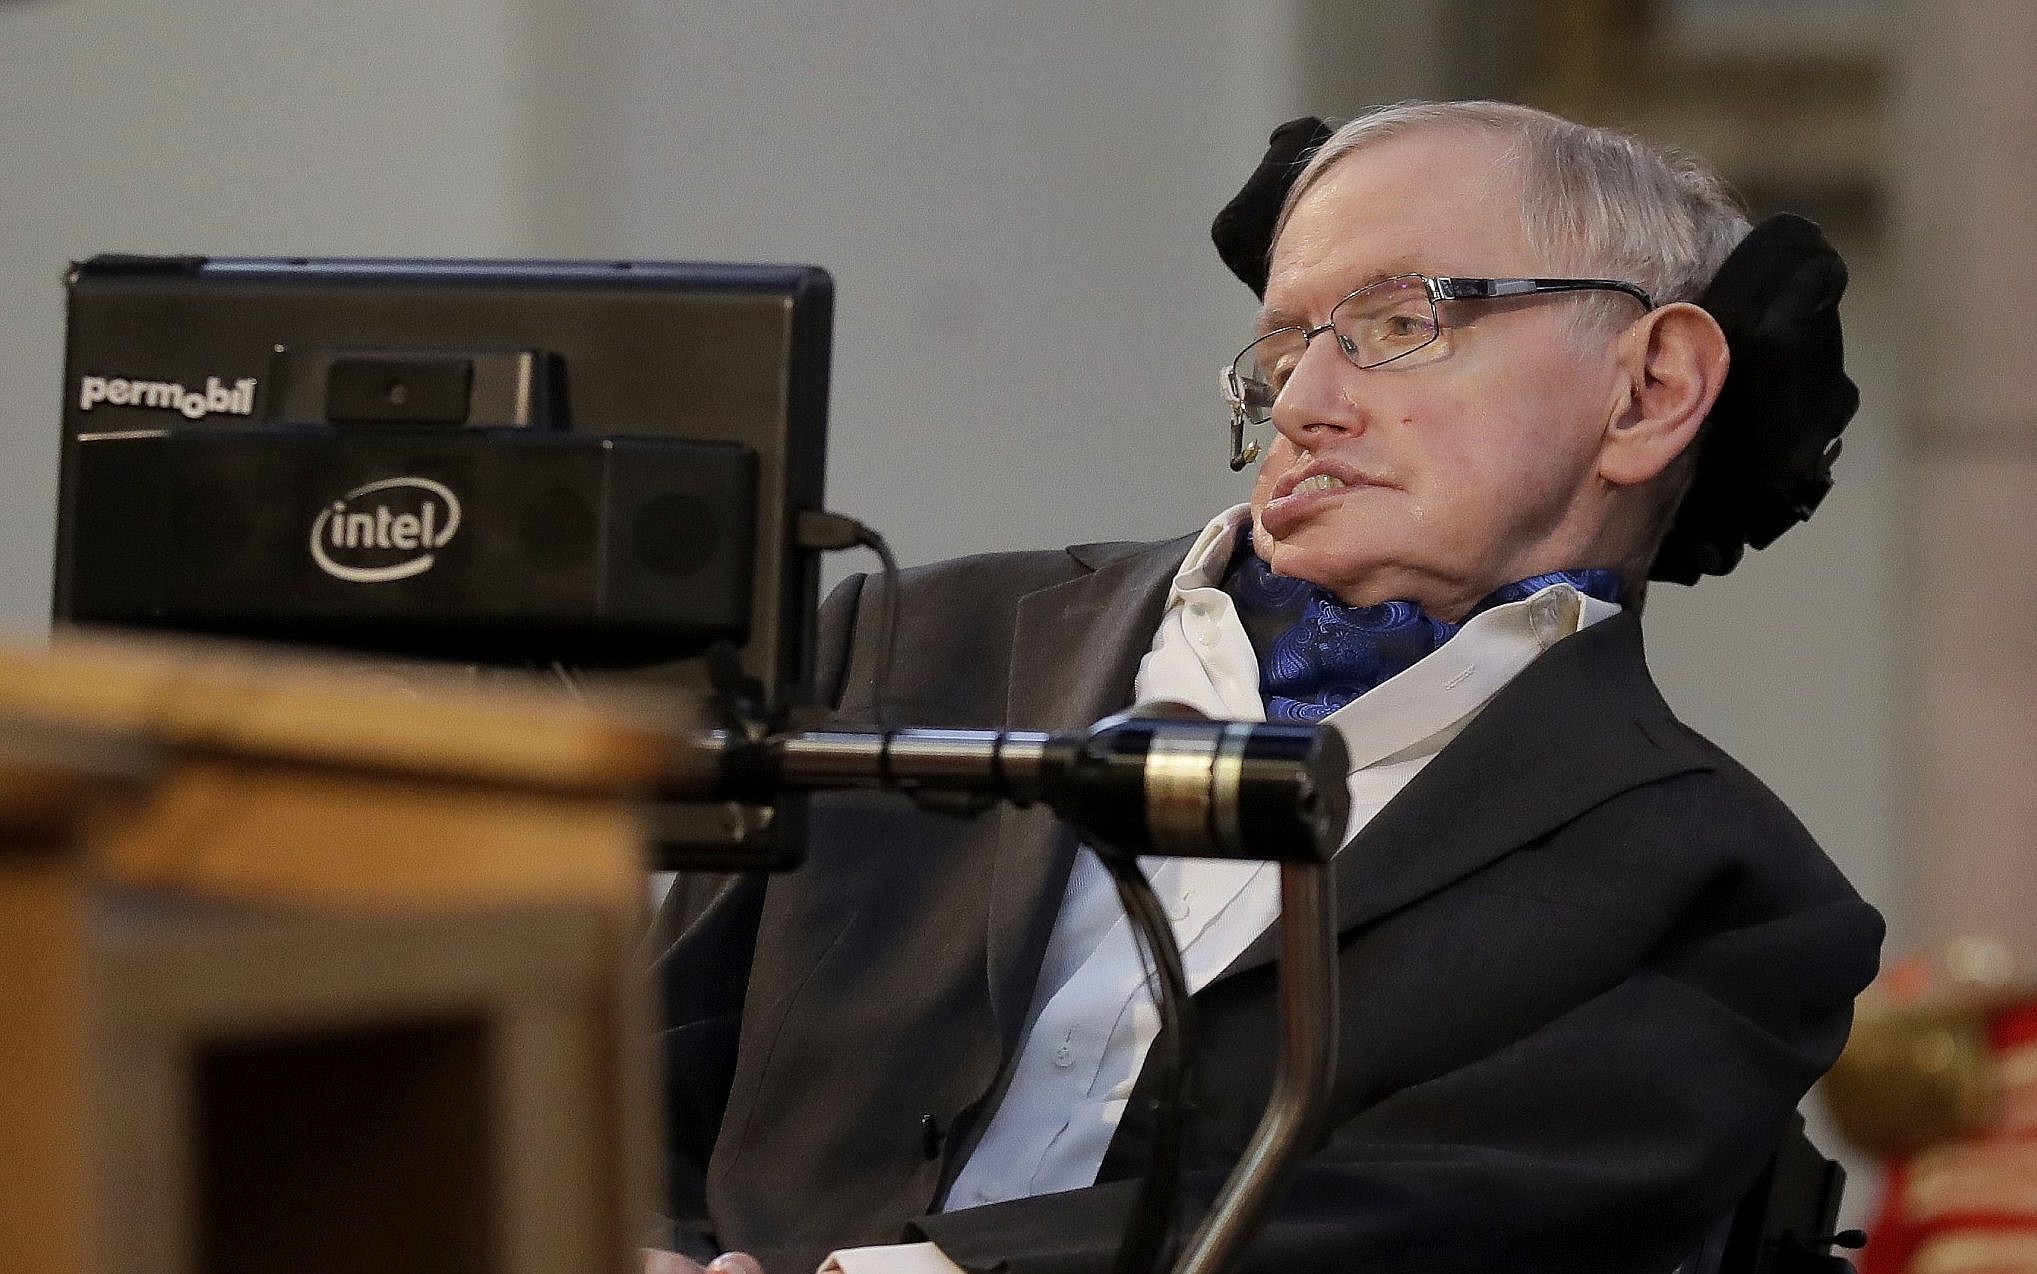 Coronavirus: Hawking's family donate ventilator to hospital